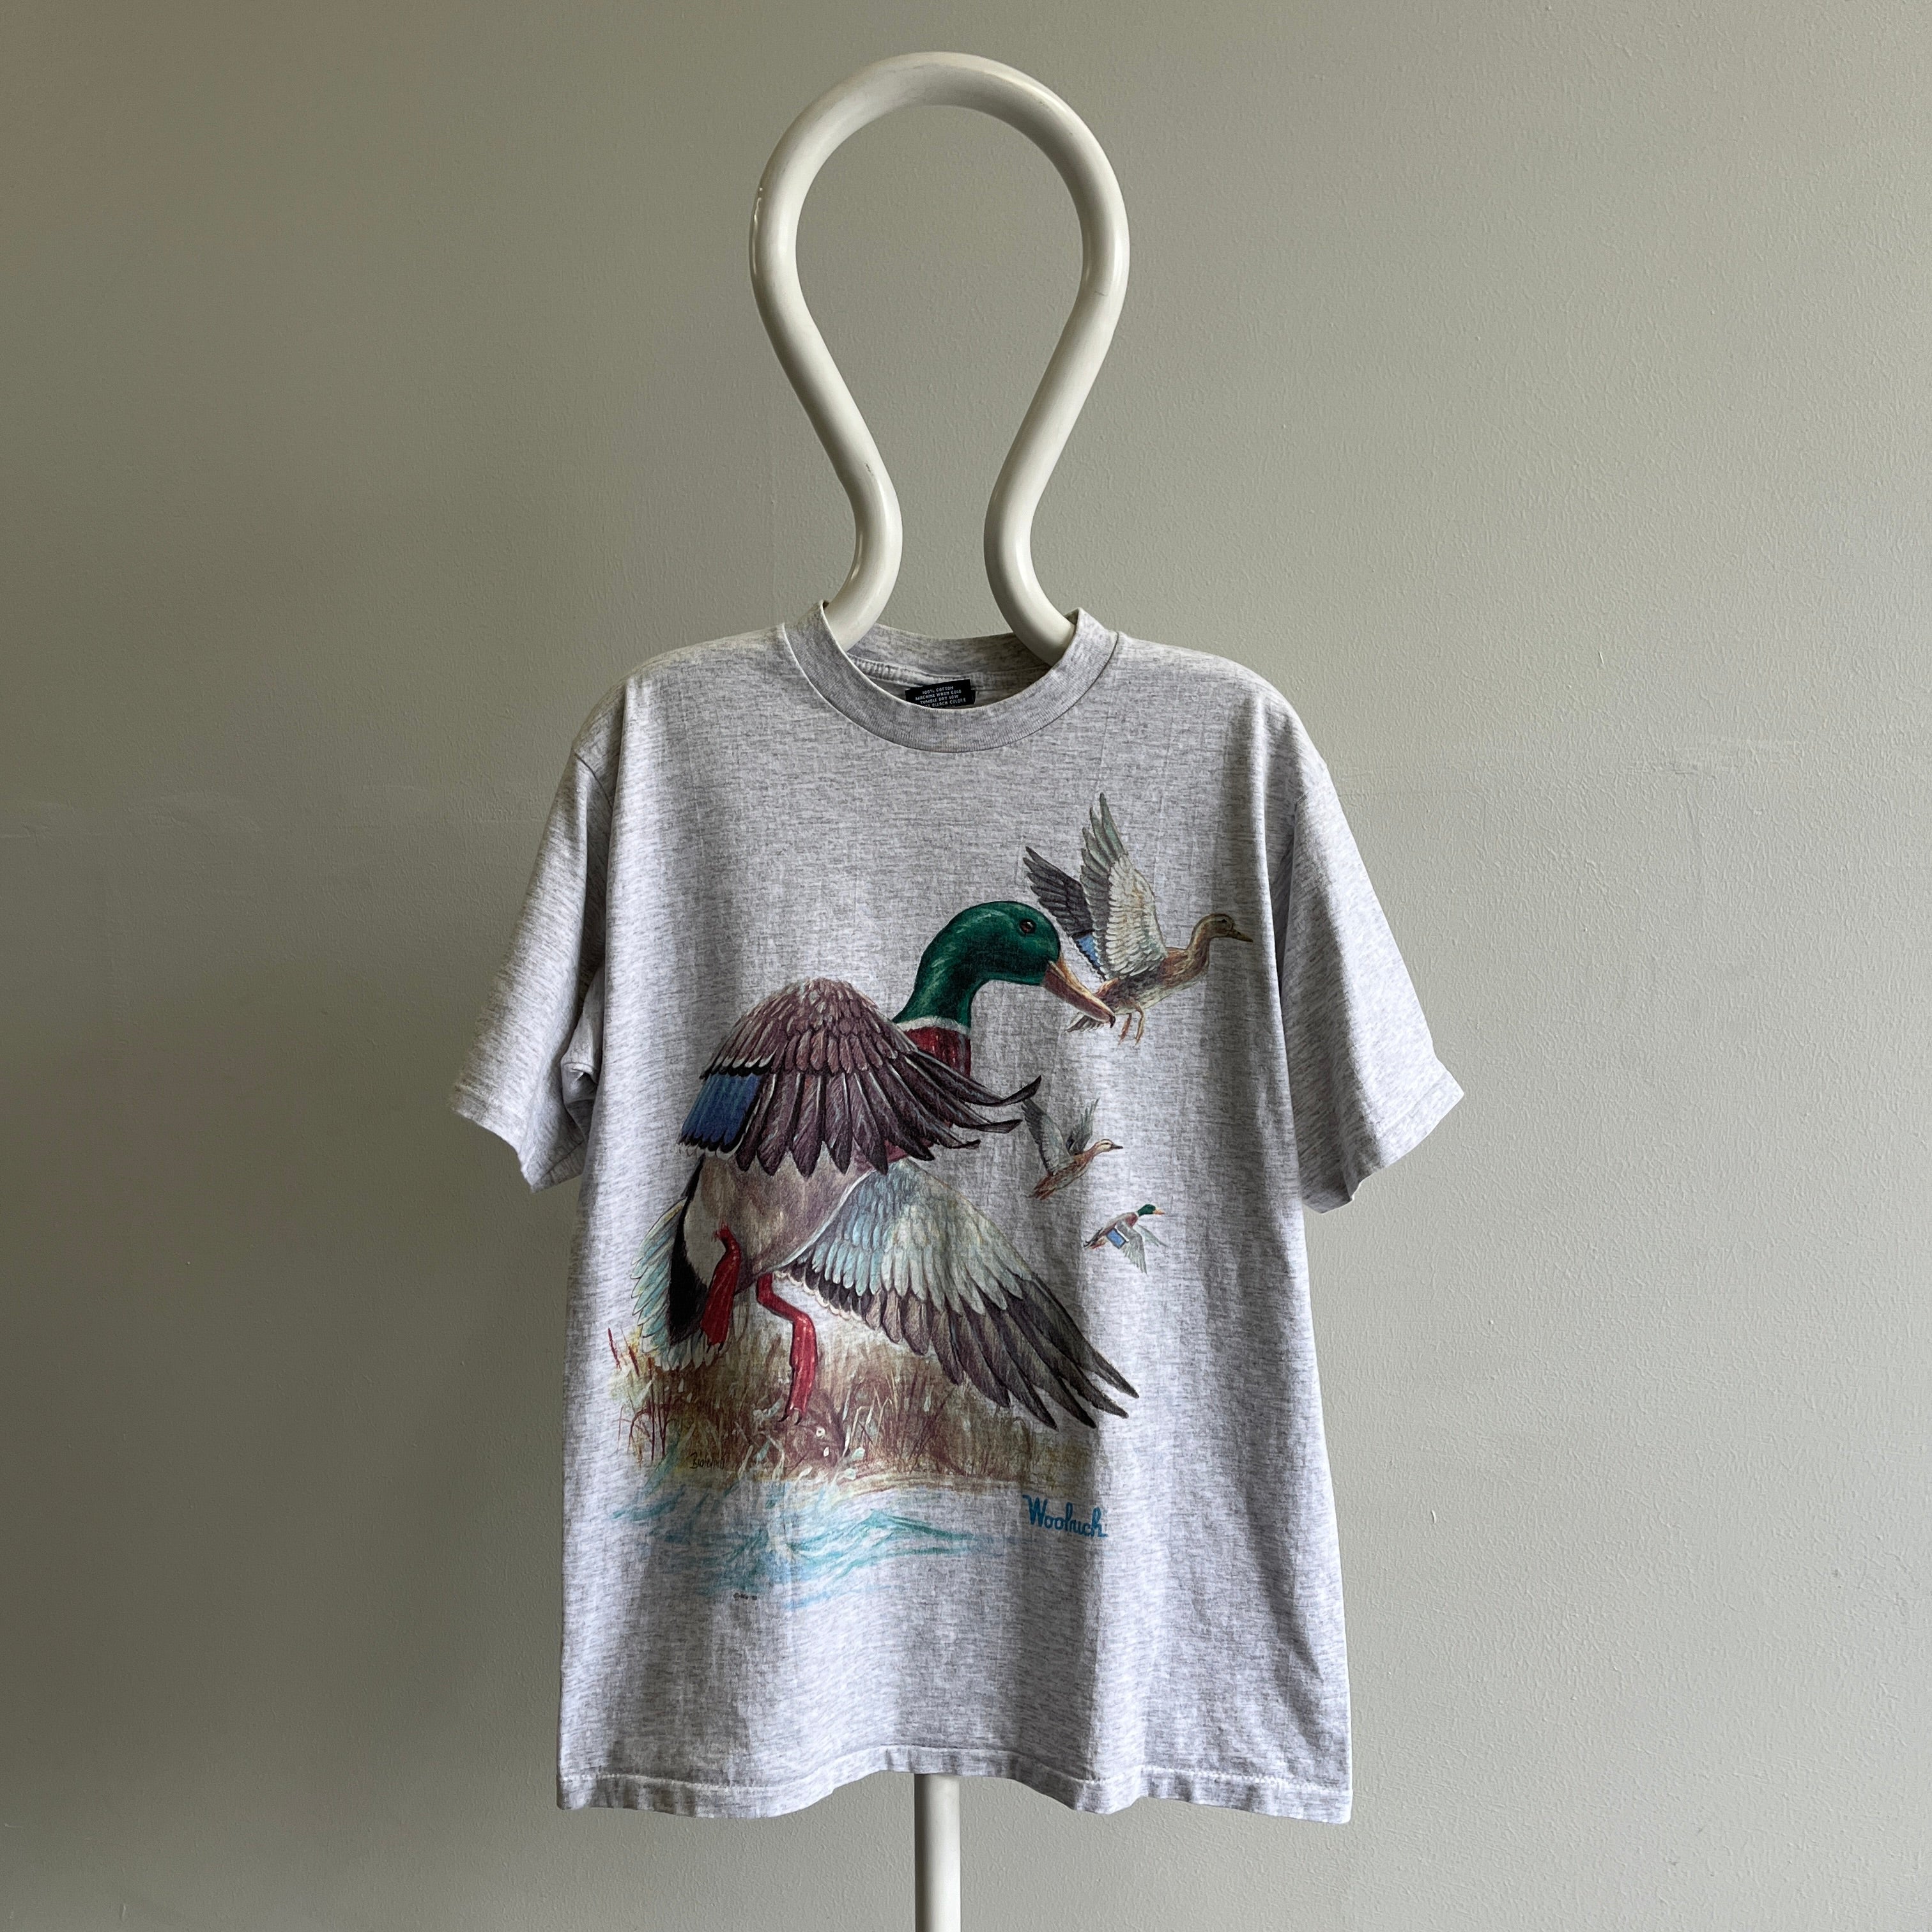 1990 uSA Woolrich Mallard T-shirt avant et arrière - Oh mon dieu !